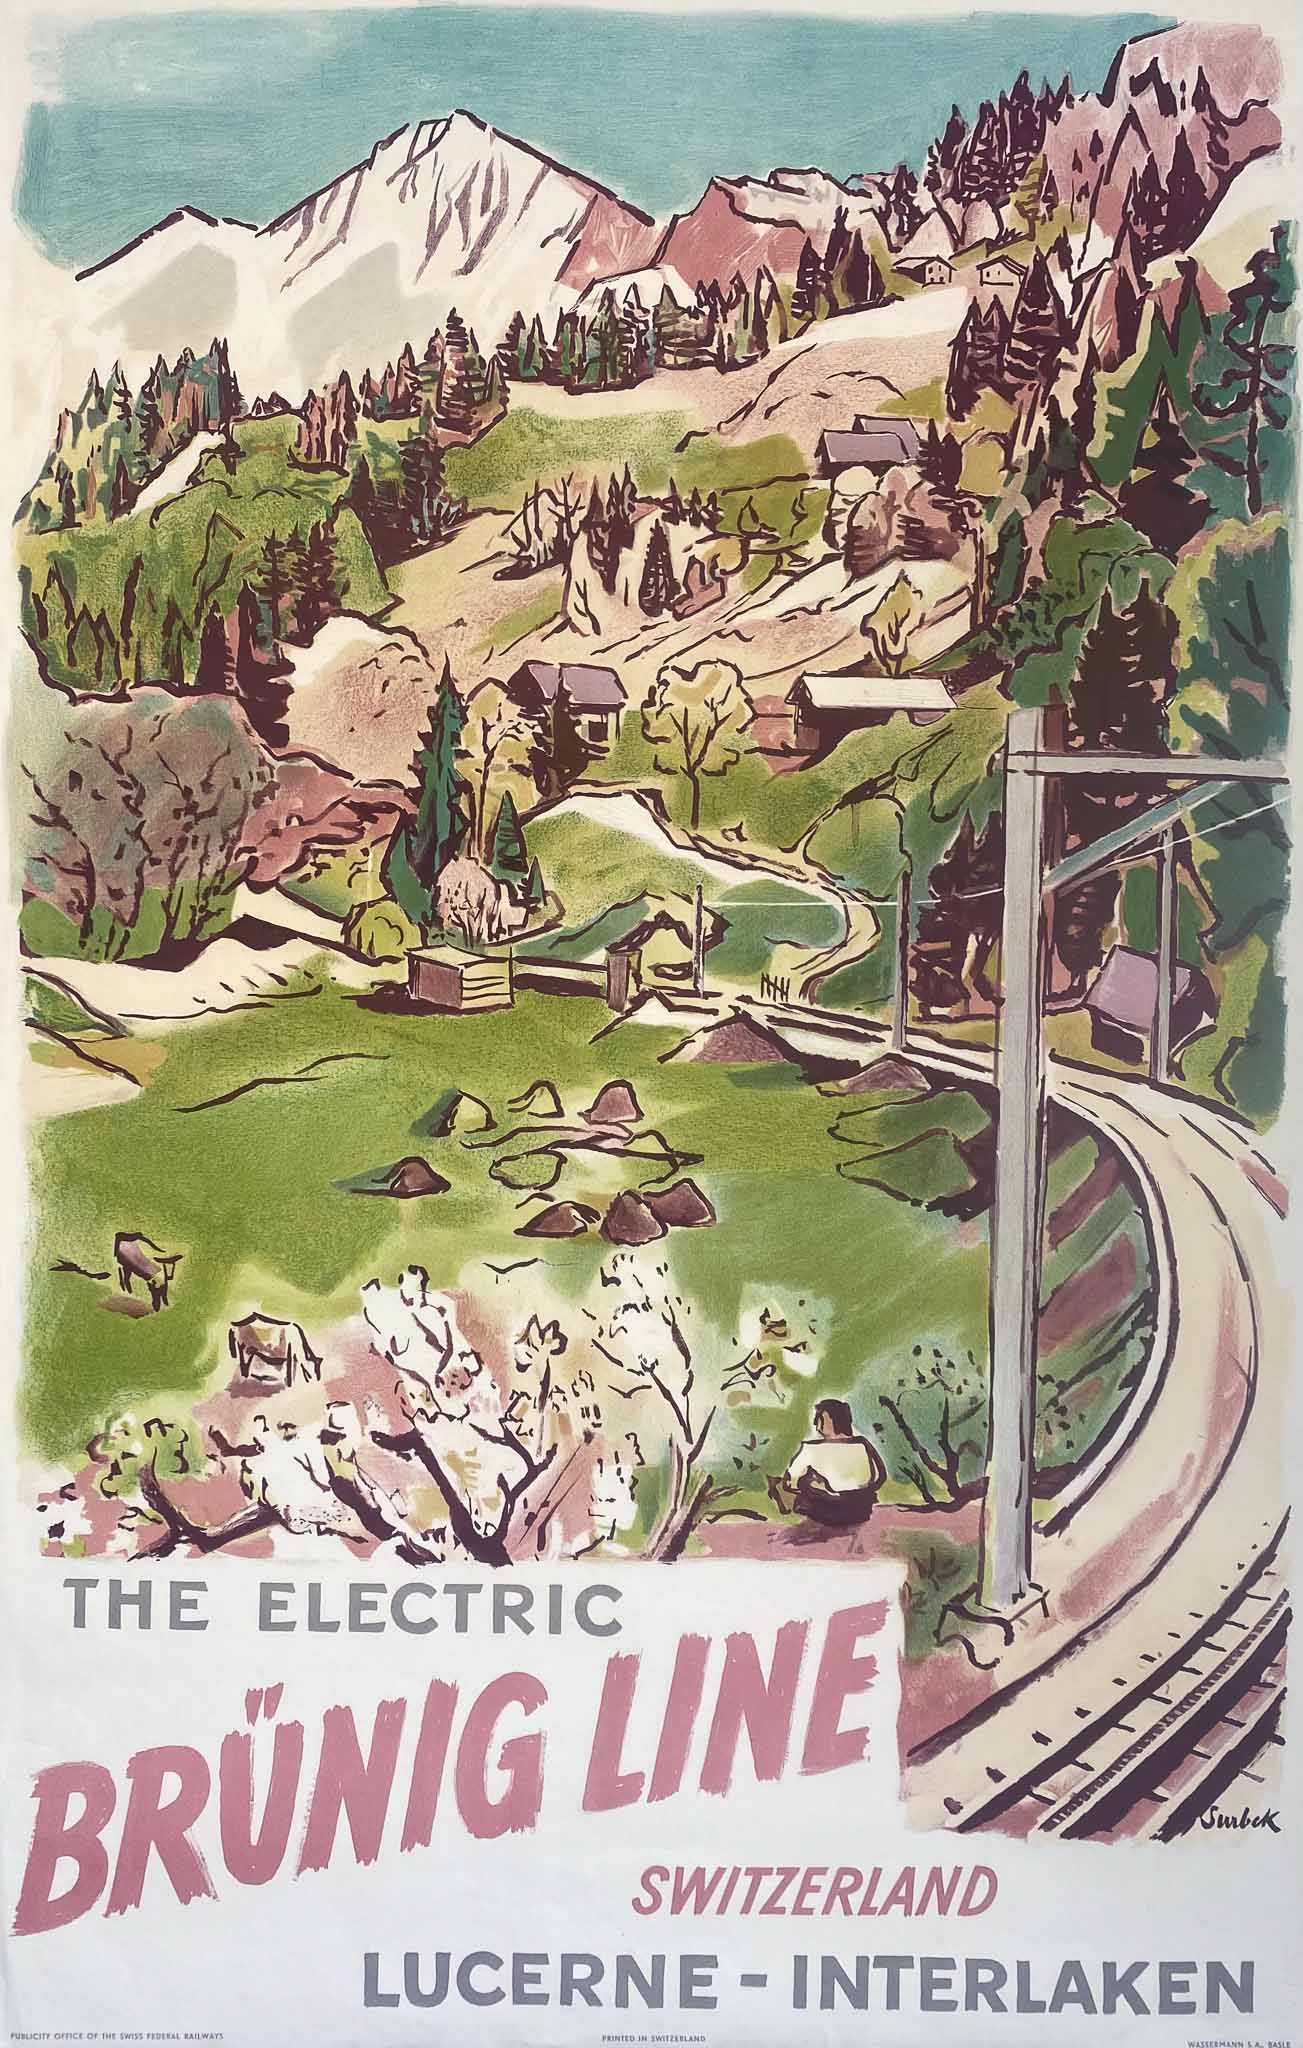 Affiche Brüning Line The Electric Switzerland Lucerne Interlaken par Surbek, 1950